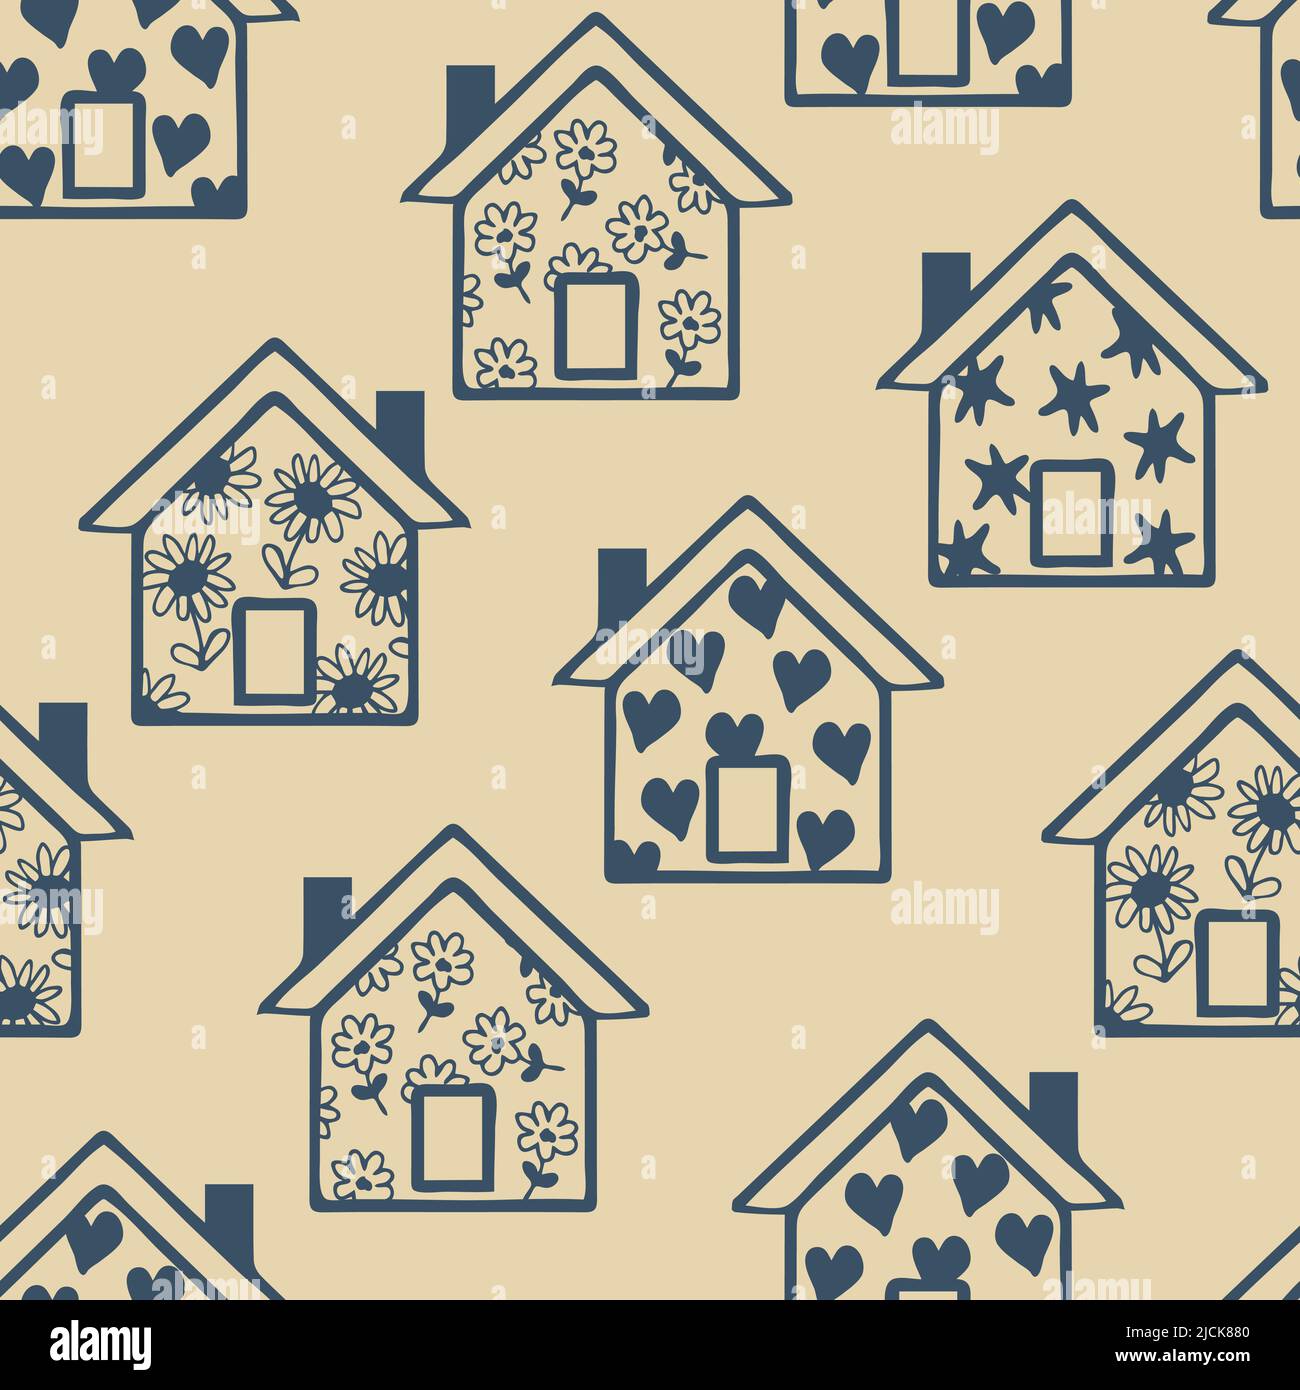 Nahtloses Vektor-Muster mit blauen Häusern auf rosa Hintergrund. Einfache Familie zu Hause Tapete Design. Happy Village Mode Textil. Stock Vektor